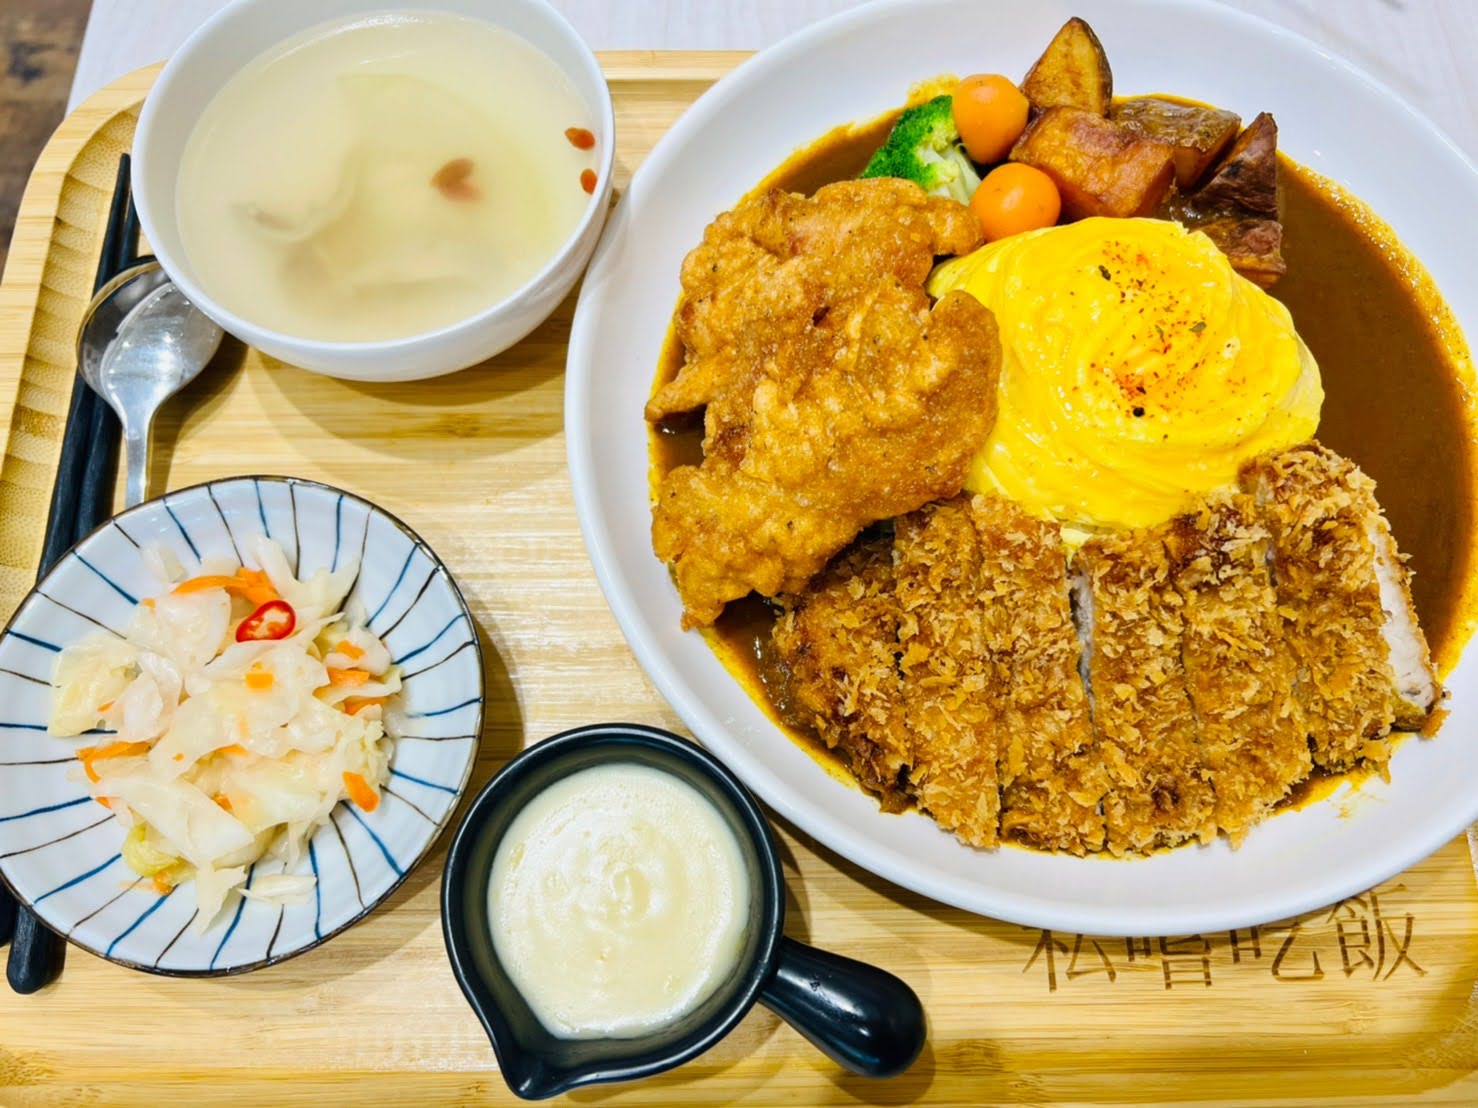 新竹餐廳推薦 竹北美食 咖哩飯 寵物友善餐廳